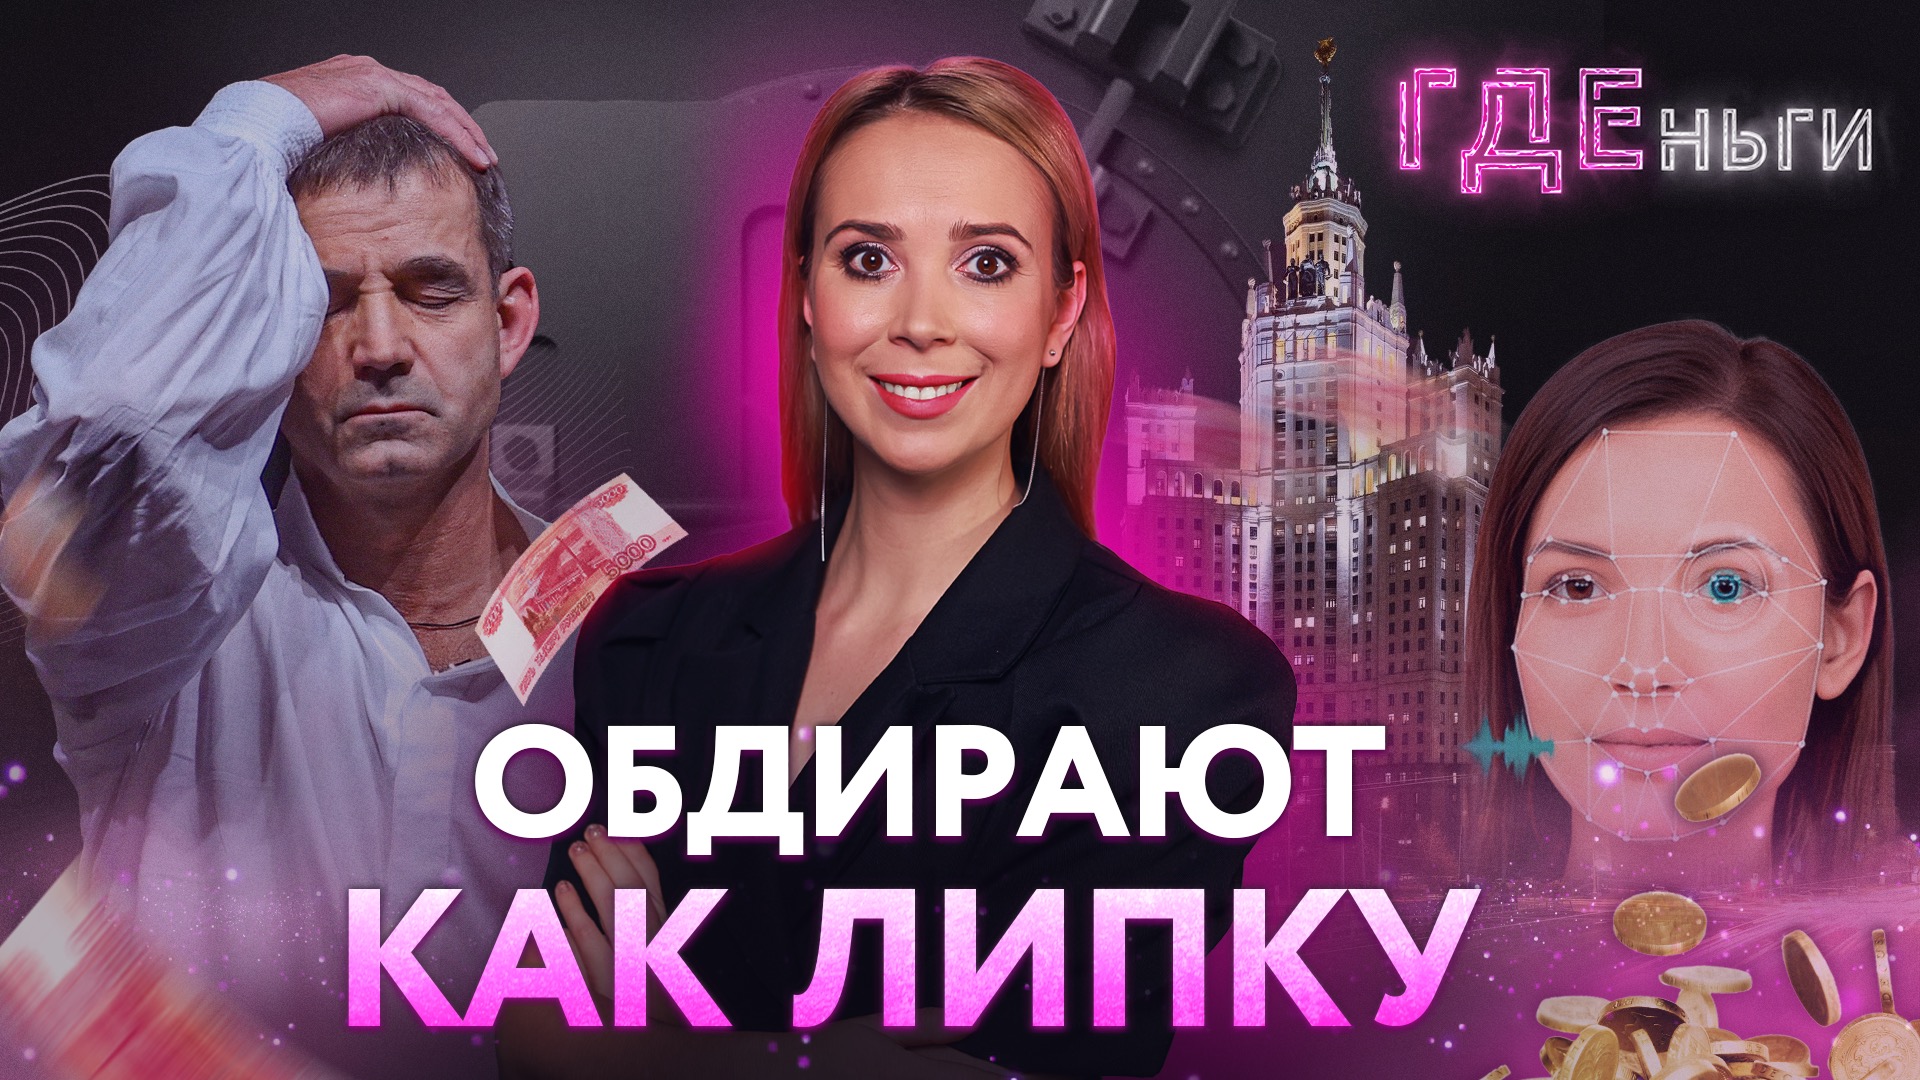 ГДЕньги: Певцов отдал деньги мошенникам, одежда и бензин в кредит, дорогие москвичи